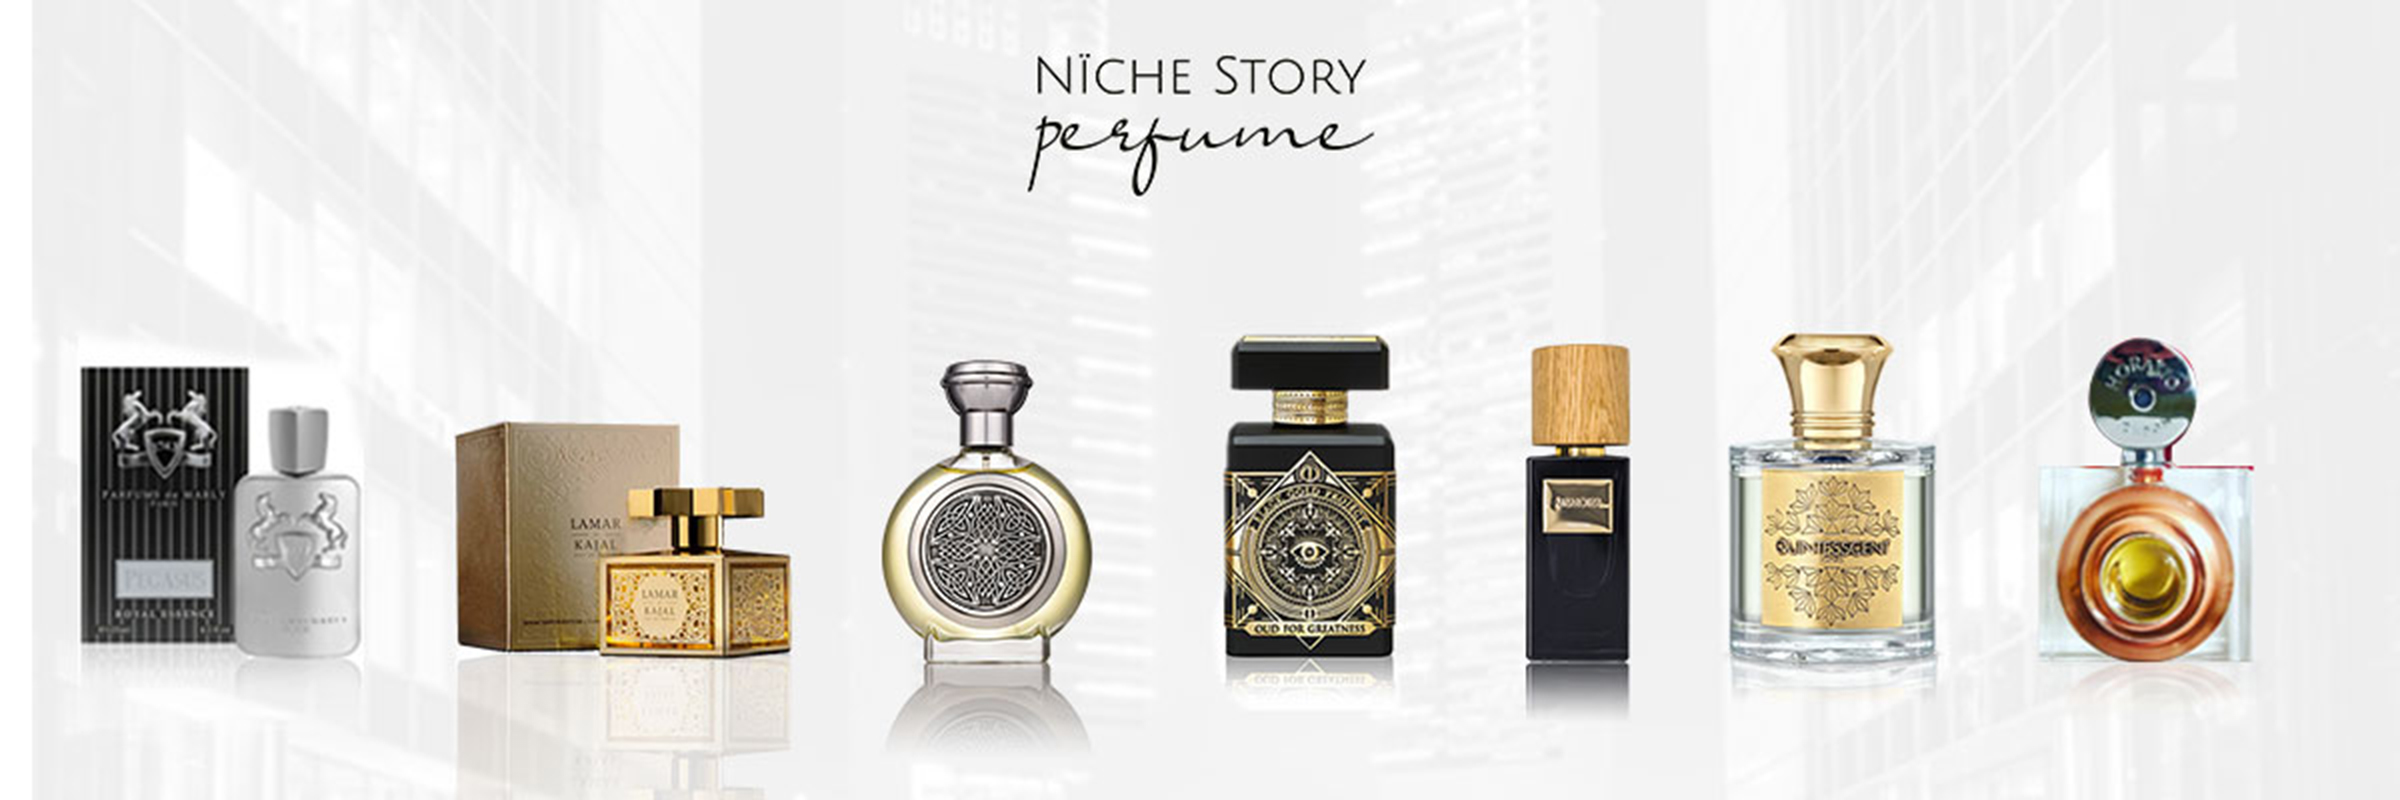 Maison de Niche - Exclusive perfumes 